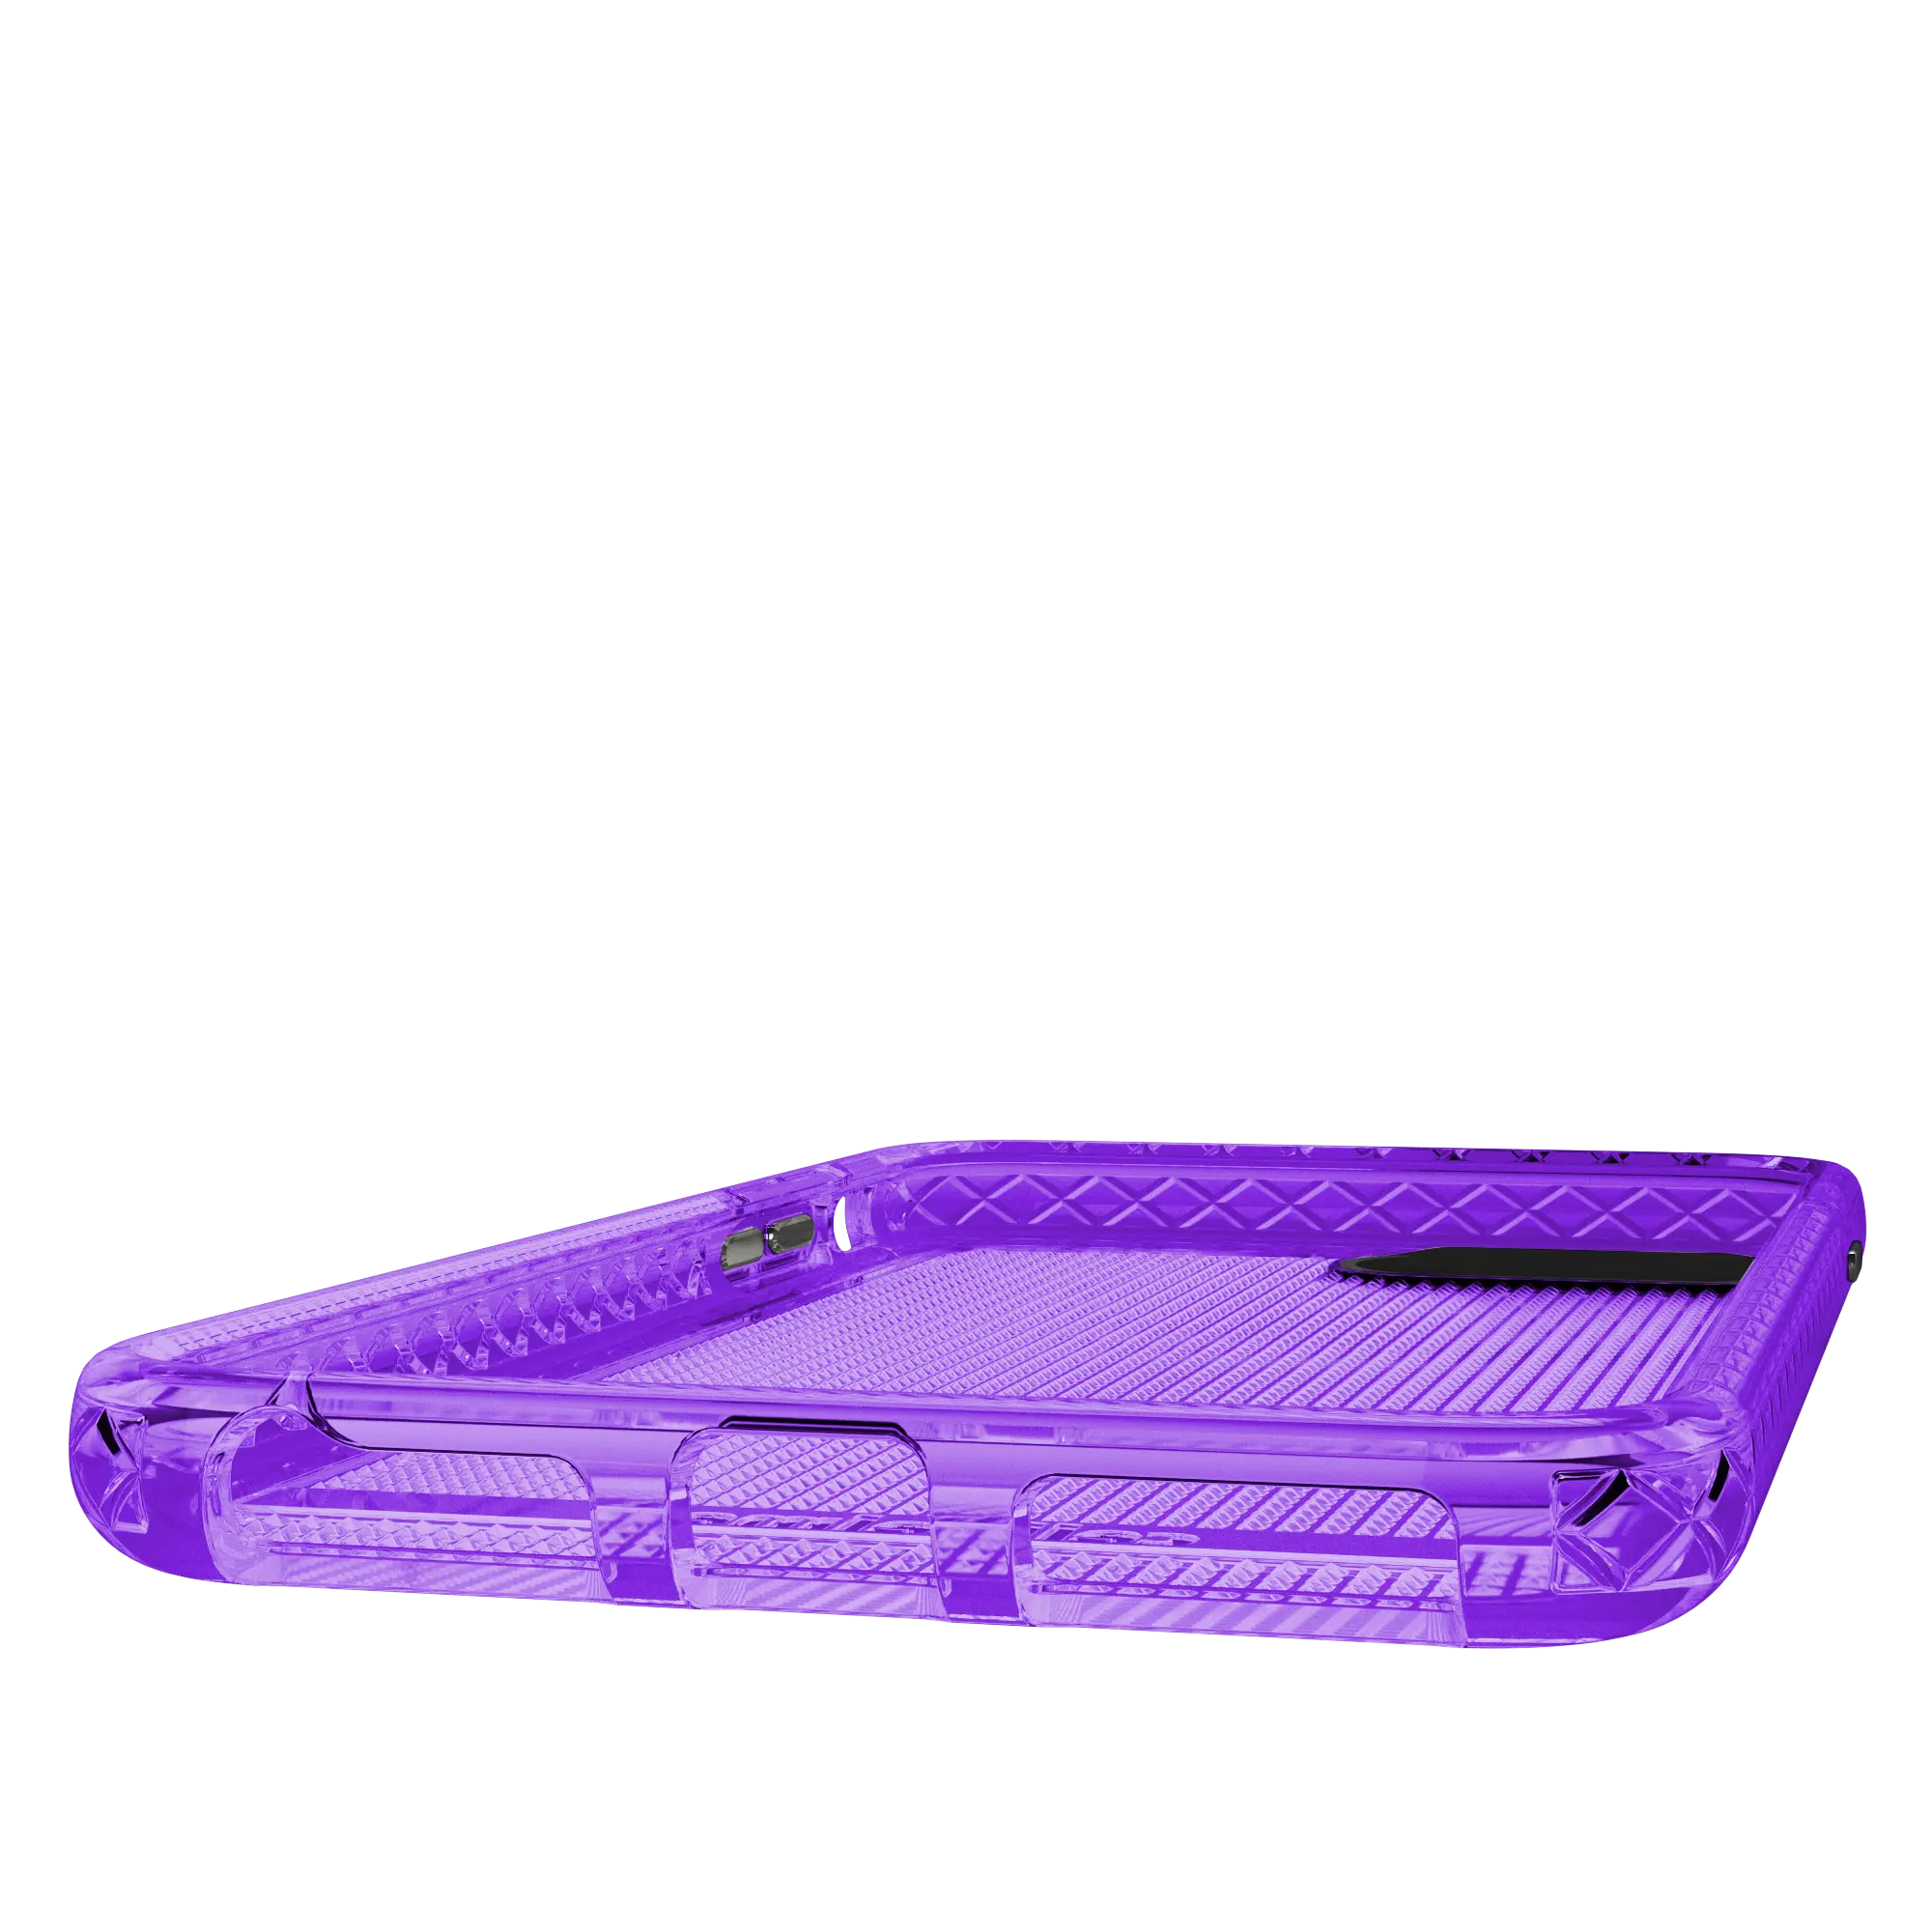 Altitude X Series for Apple iPhone 6 / 7 / 8 Plus  - Purple - Case -  - cellhelmet